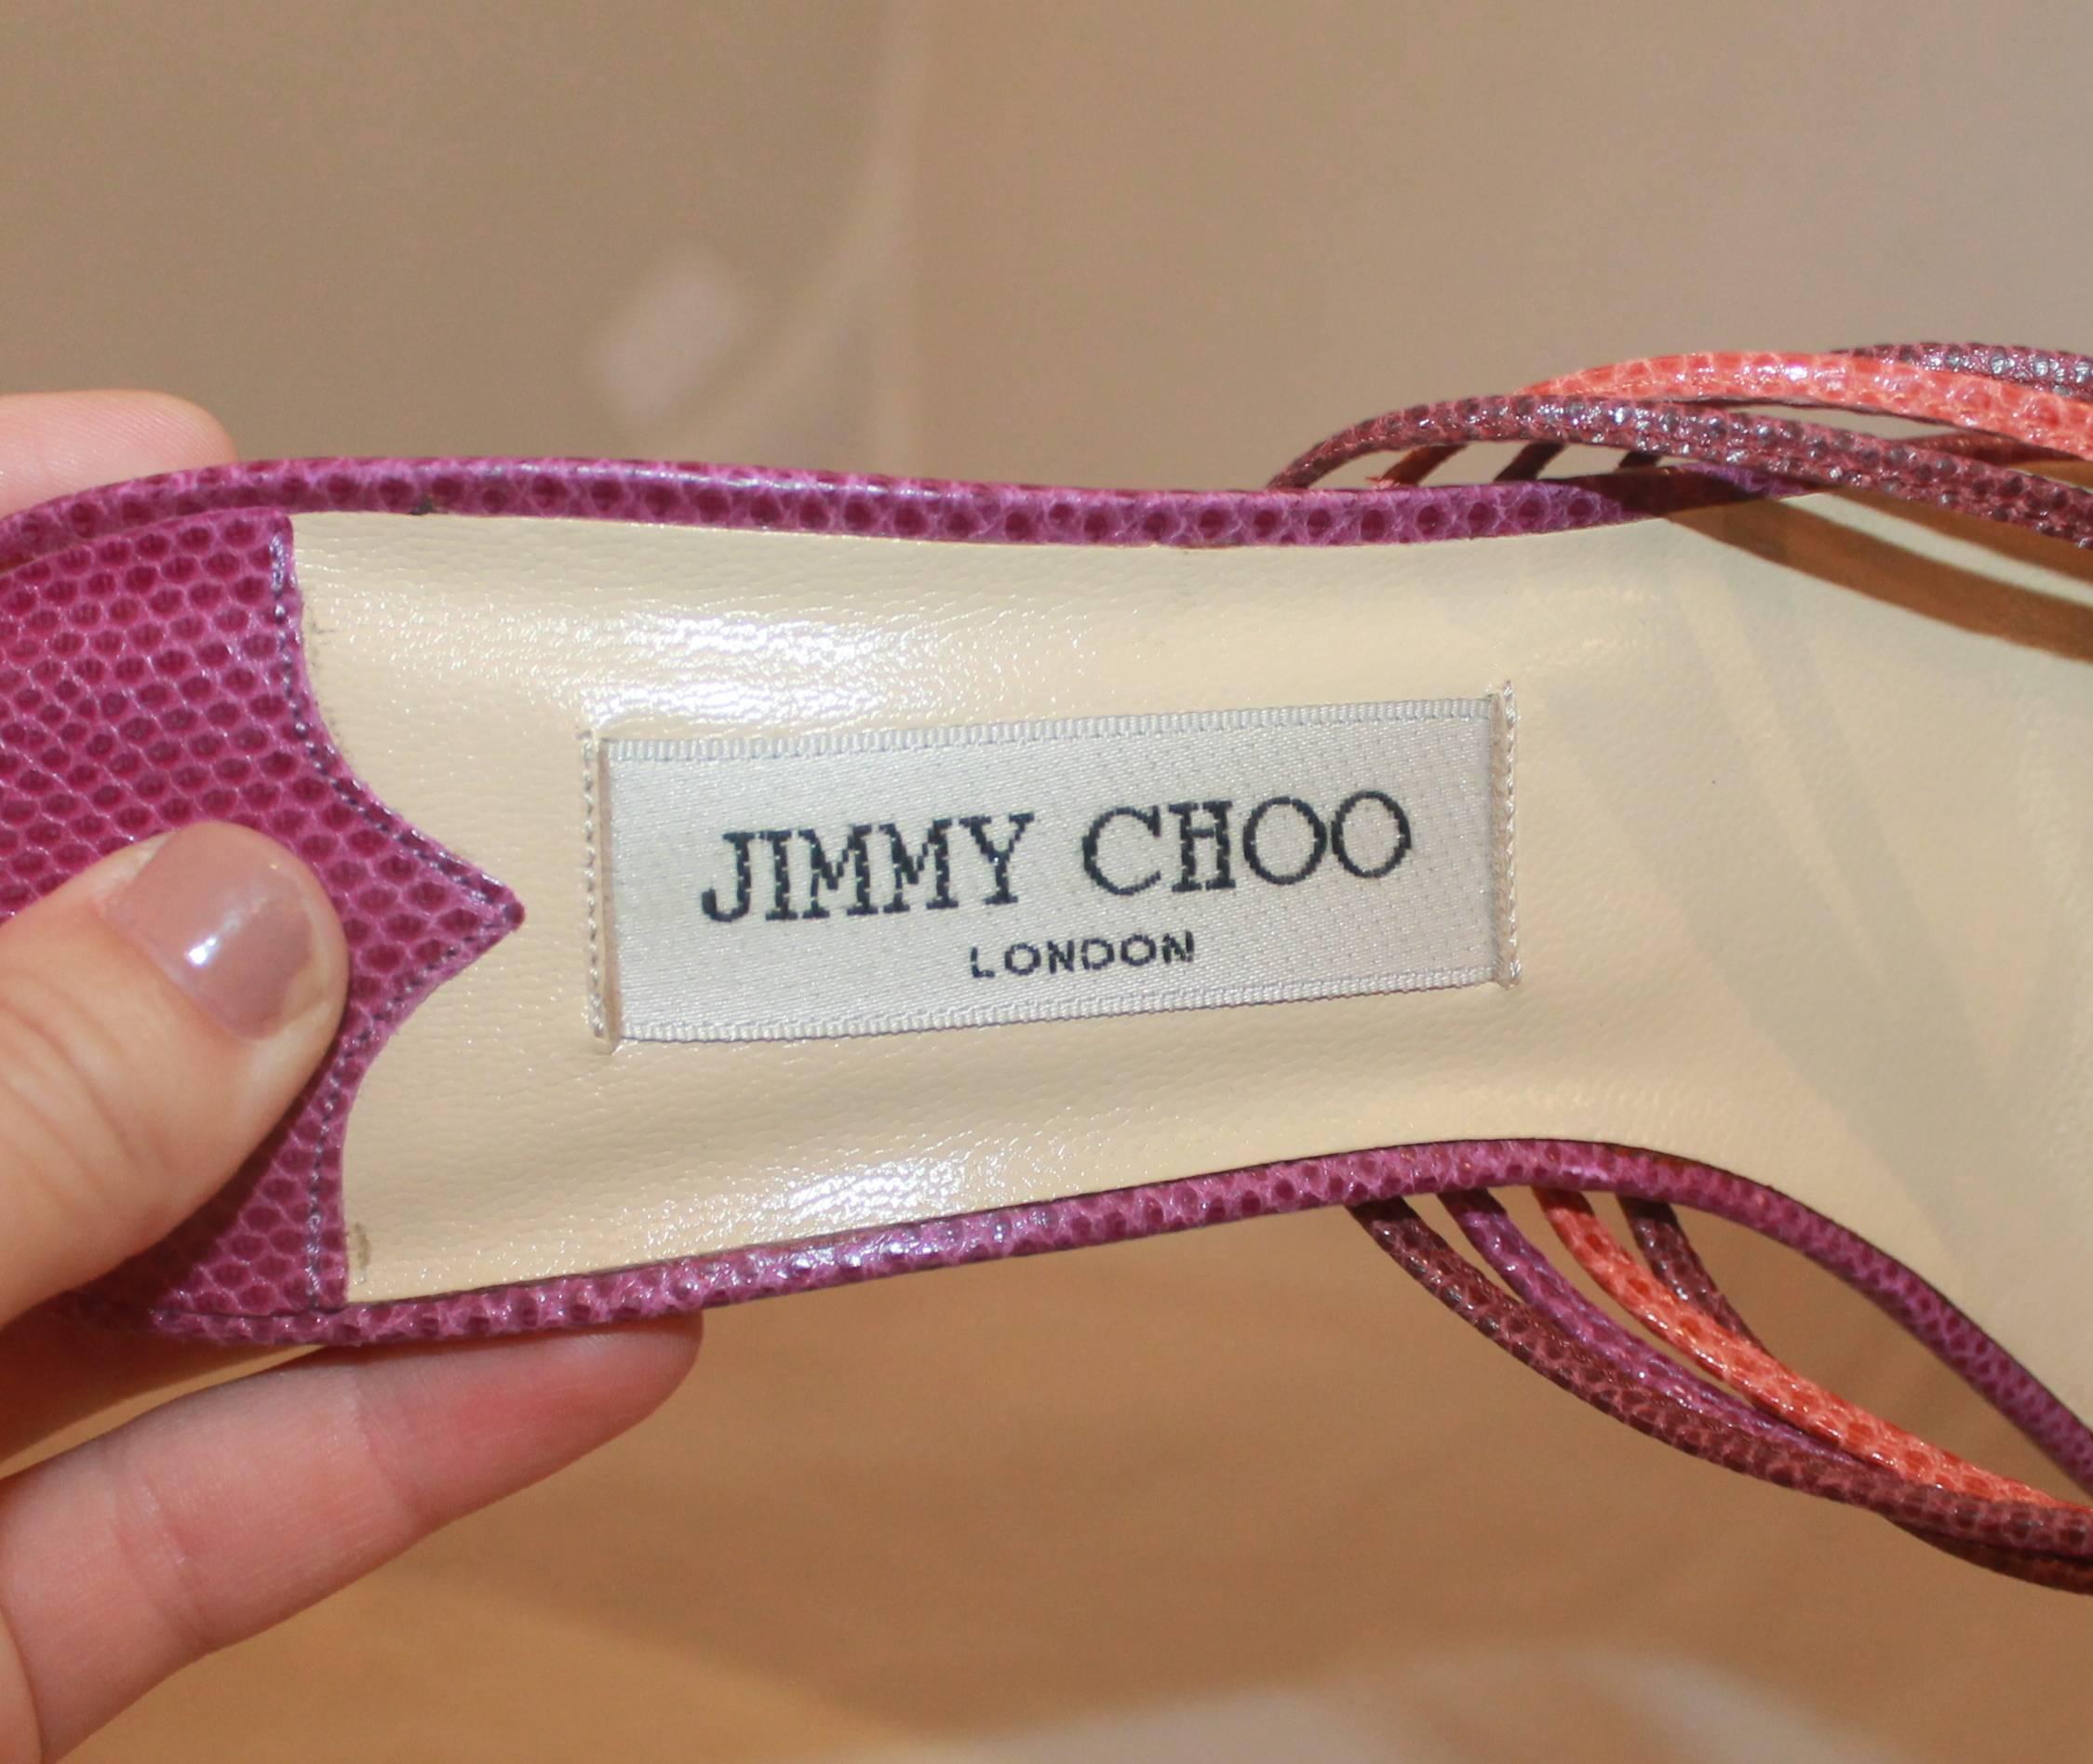 Jimmy Choo Gewebte Schuhe mit Slide Heels in Lila und Koralle aus Eidechse - 39 Damen im Angebot